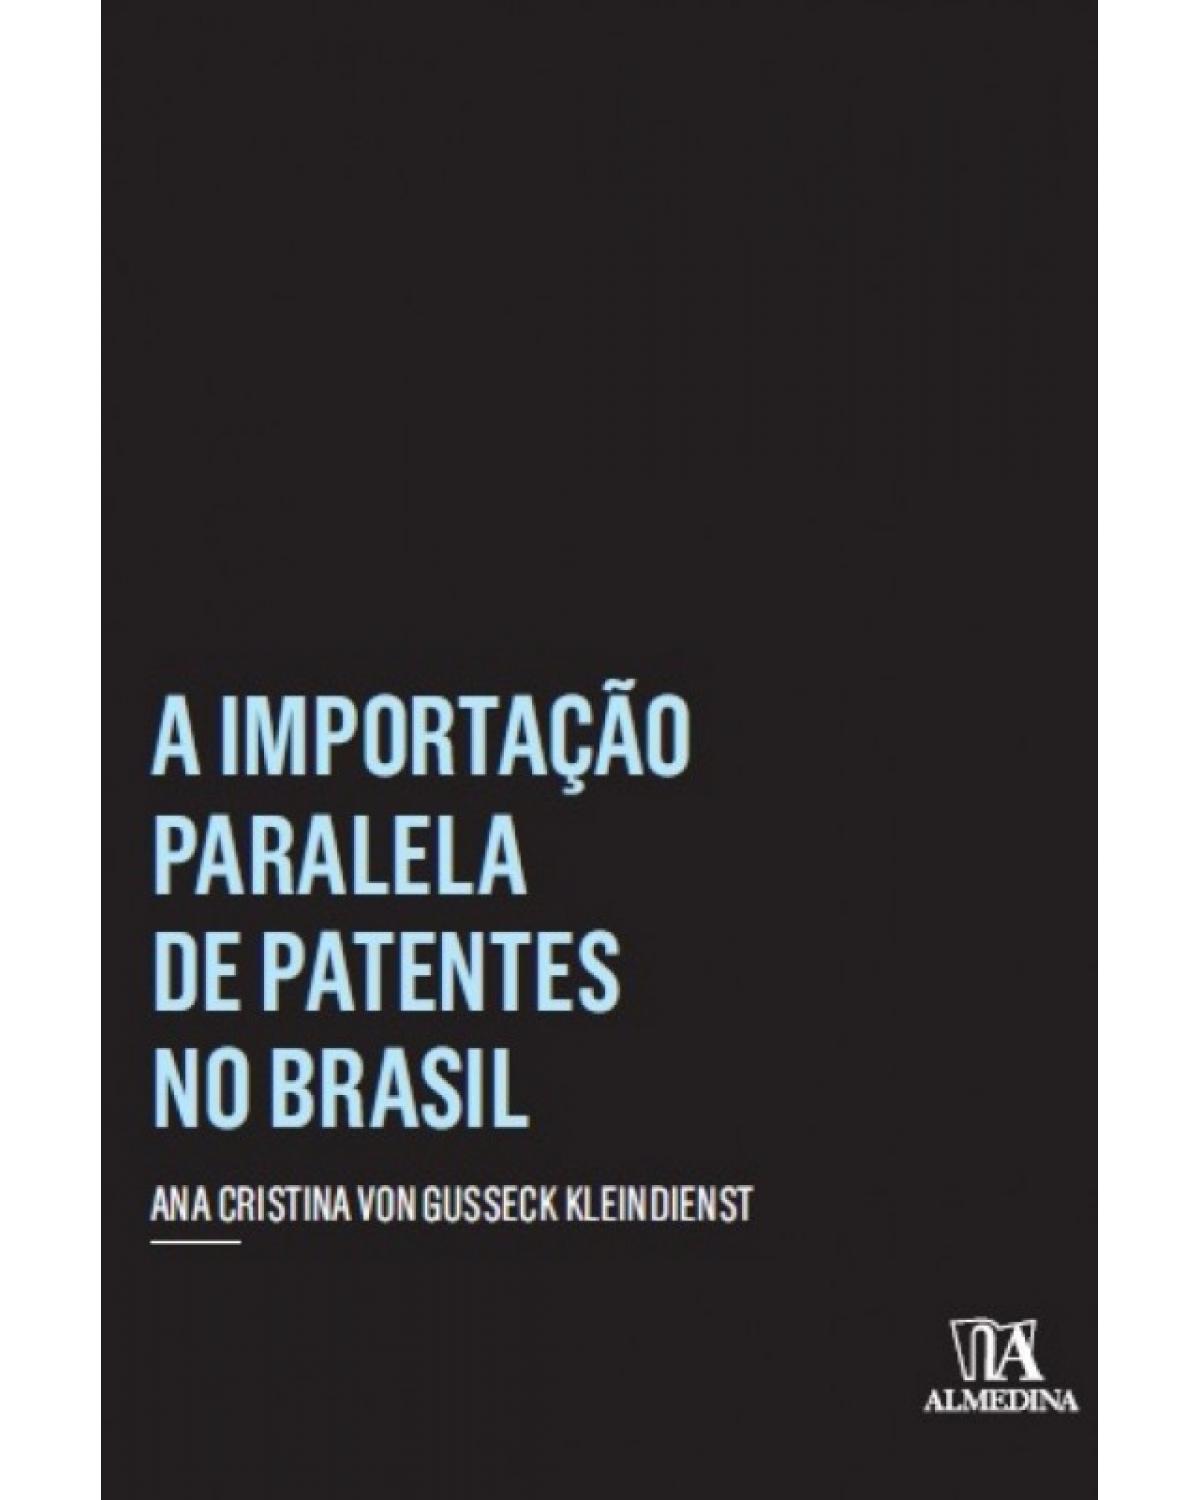 A Importação Paralela de Patentes no Brasil